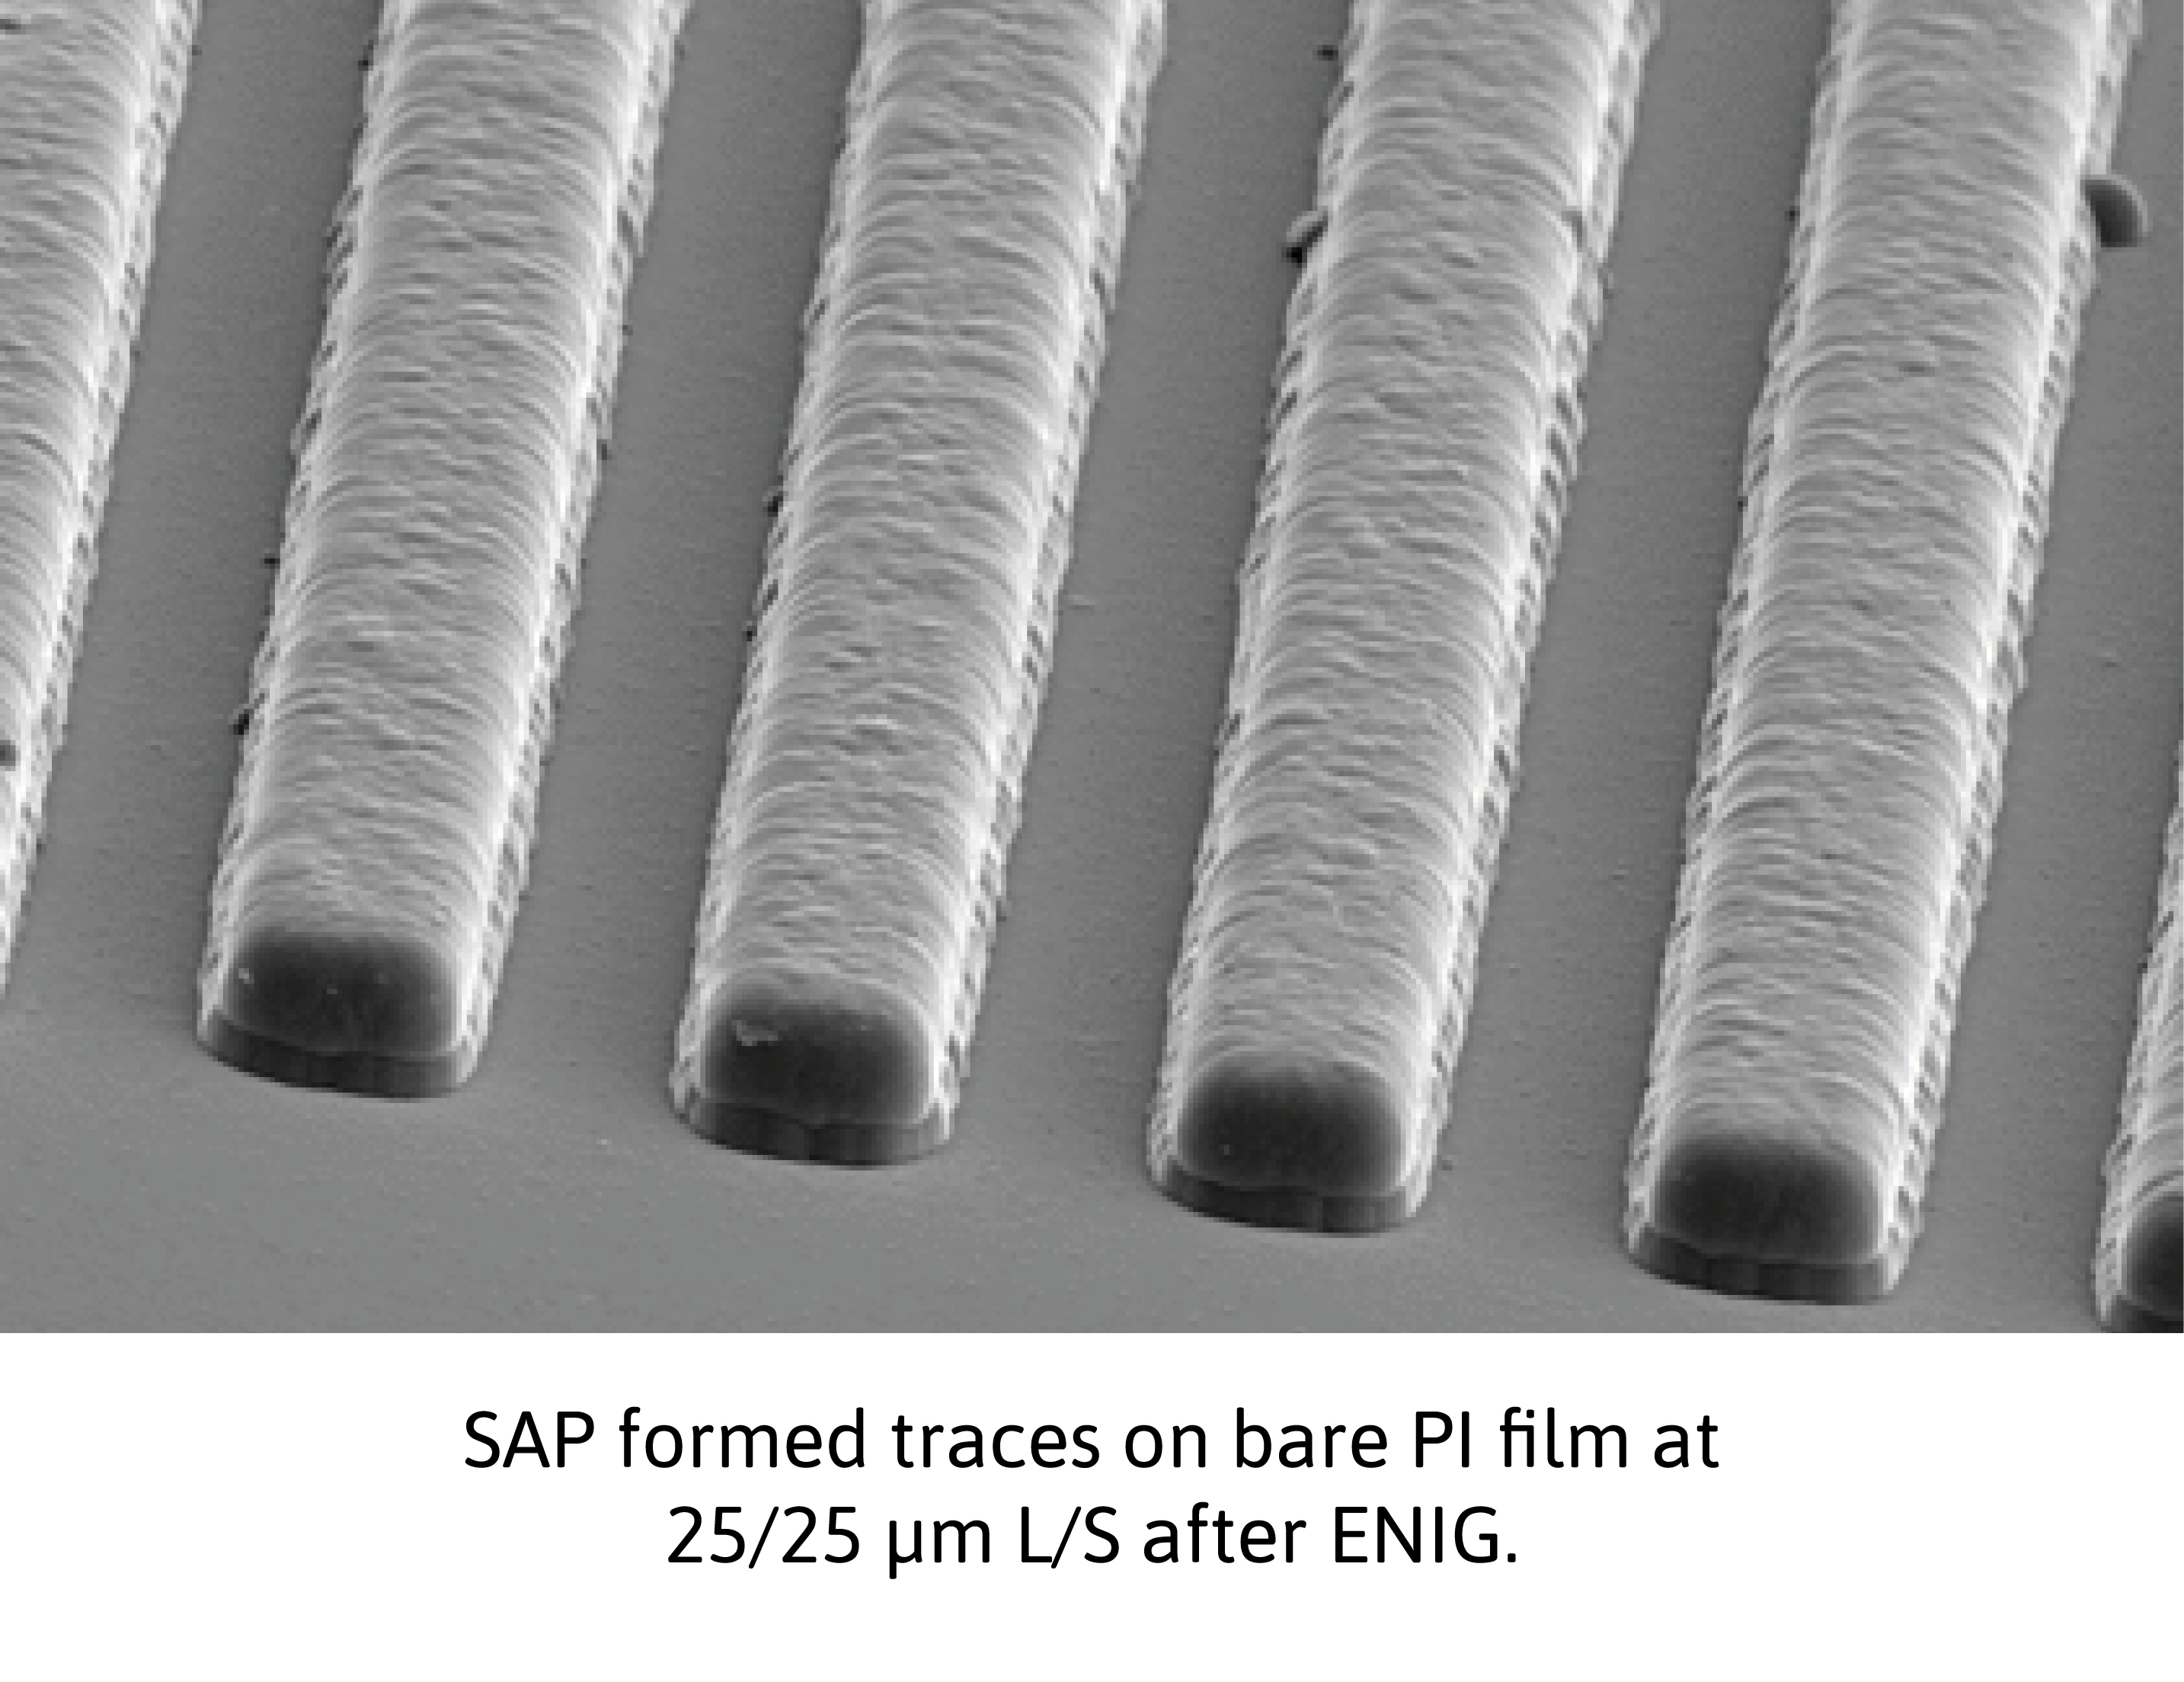 SAP formed traces on bare Pl film after ENIG